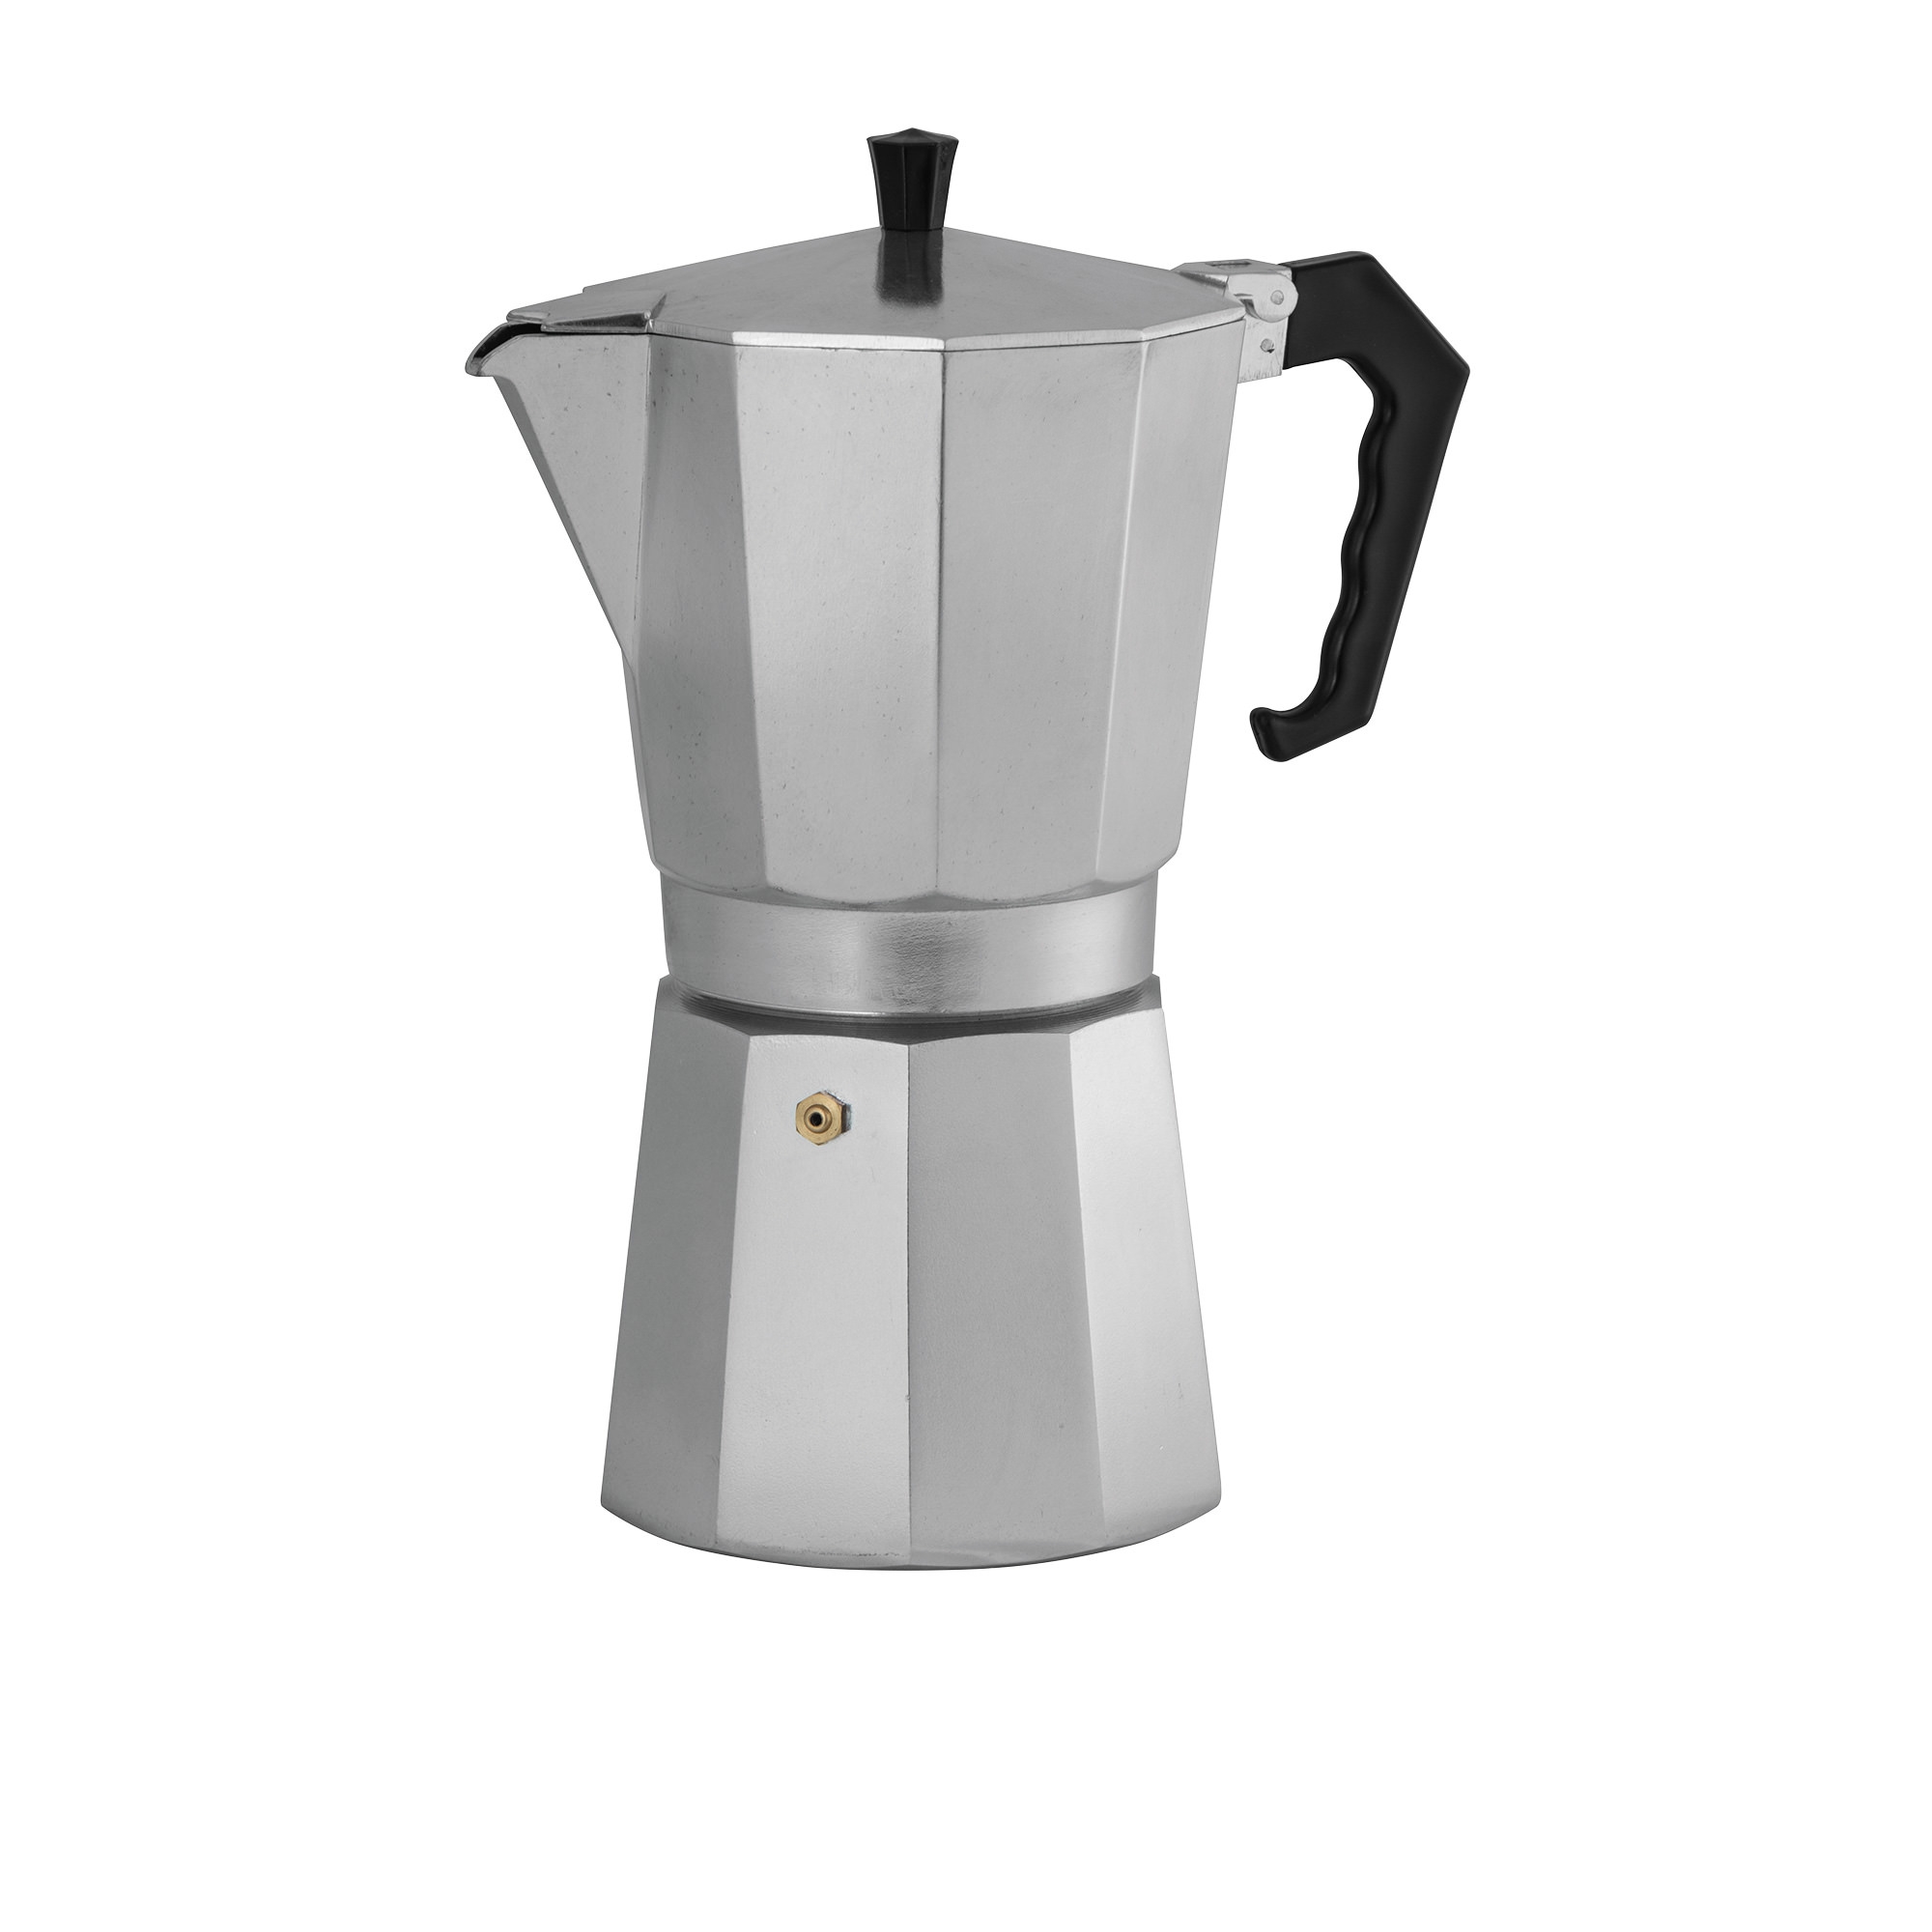 Avanti ClassicPro Espresso Coffee Maker 12 Cup Image 1